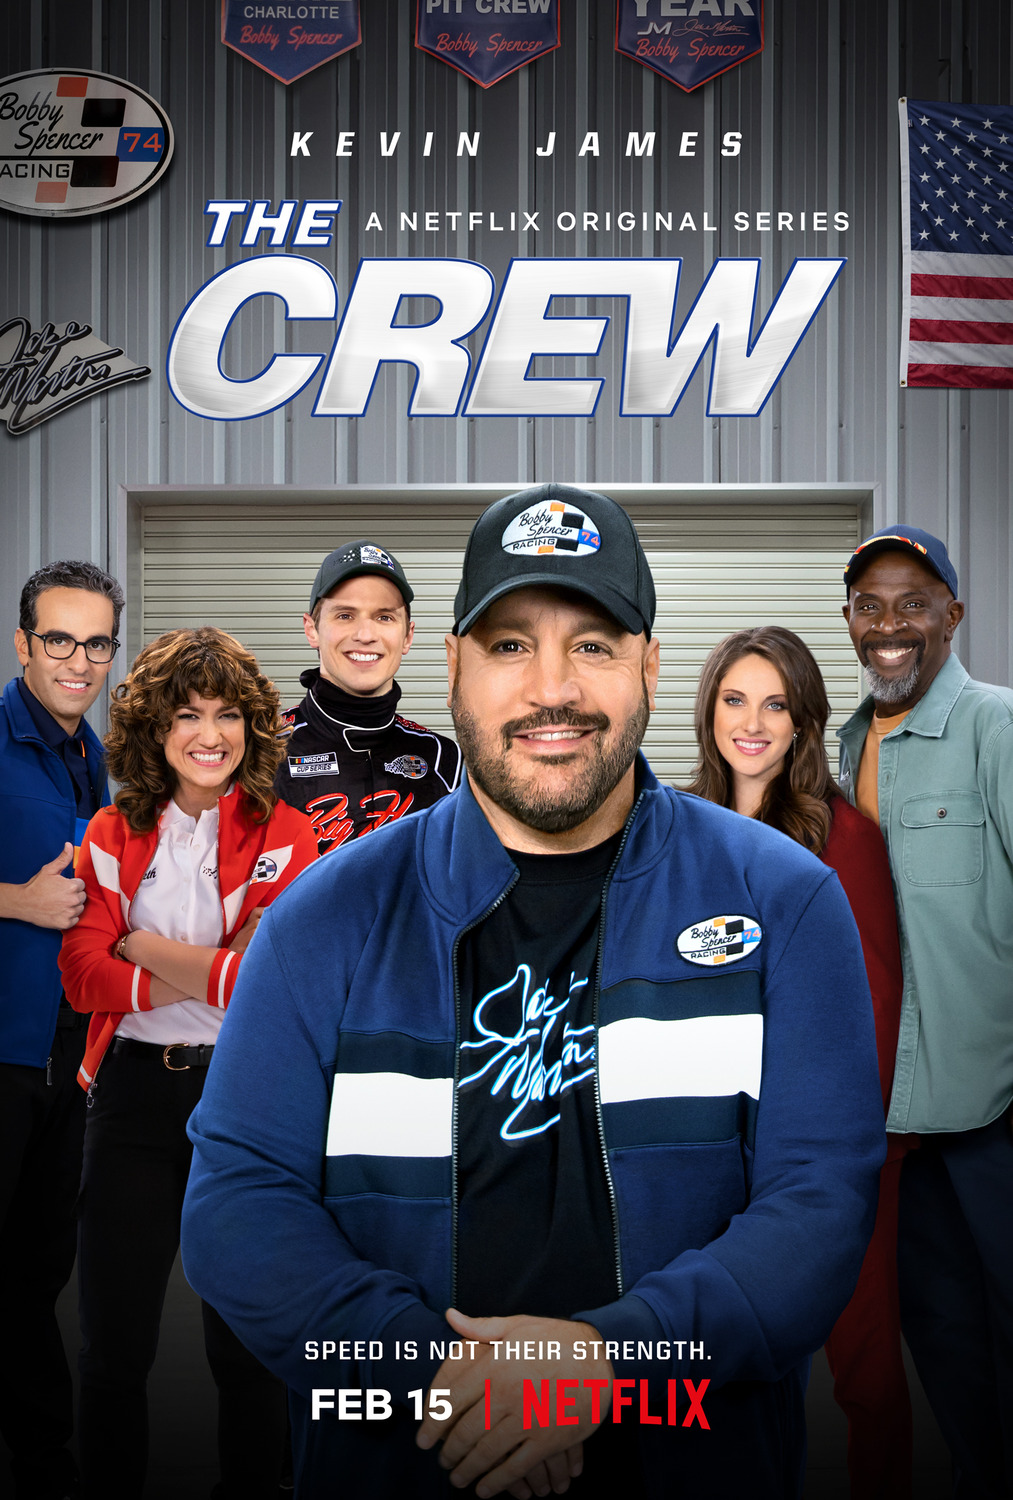 The Crew Season 1